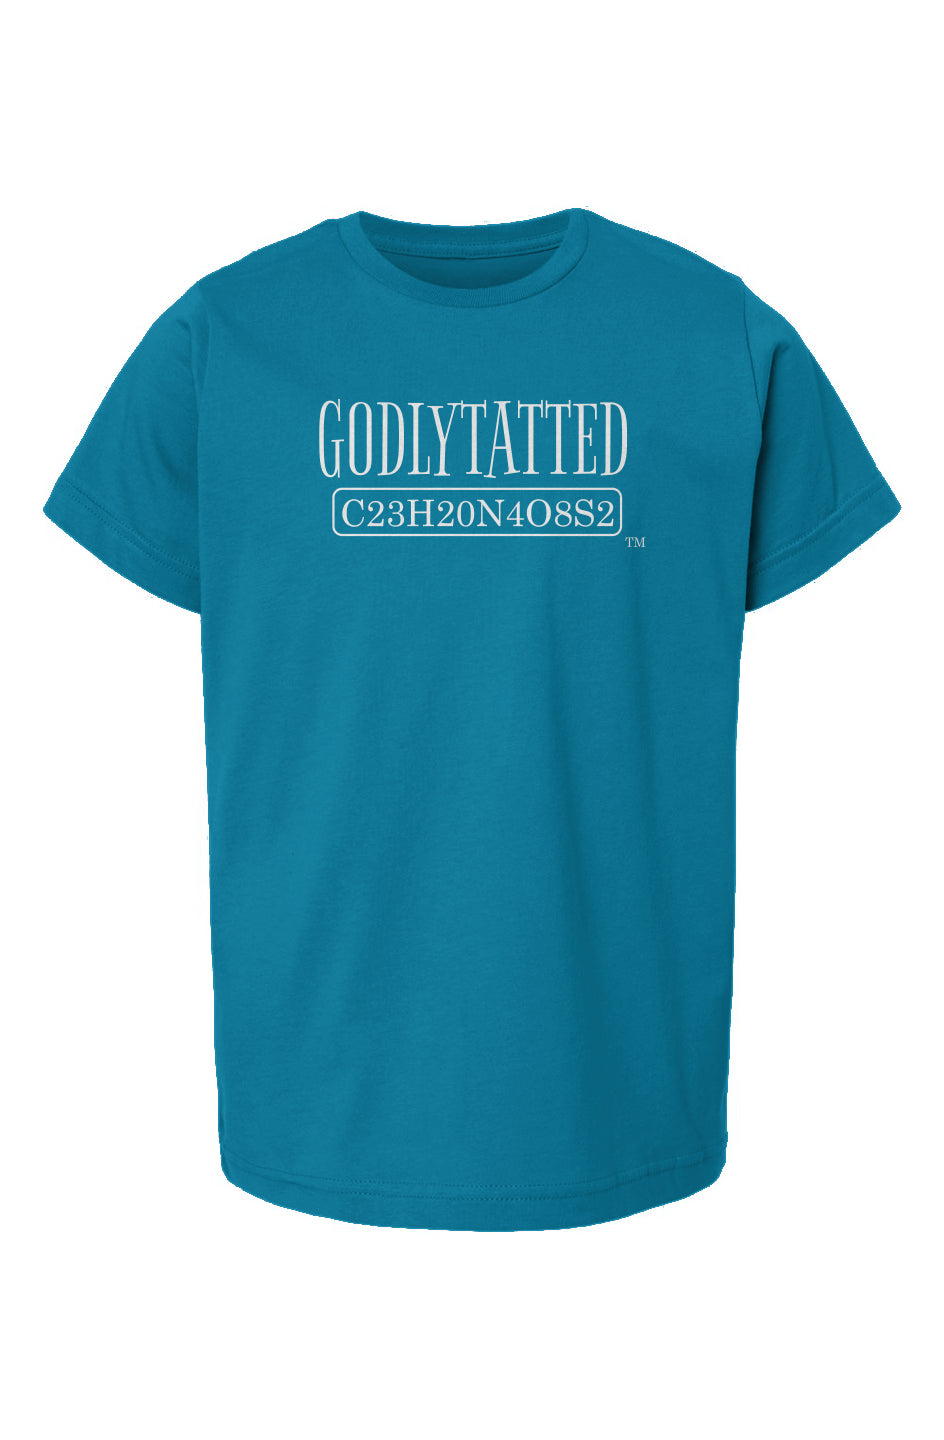 godlytatted - kids - Cobalt - white logo